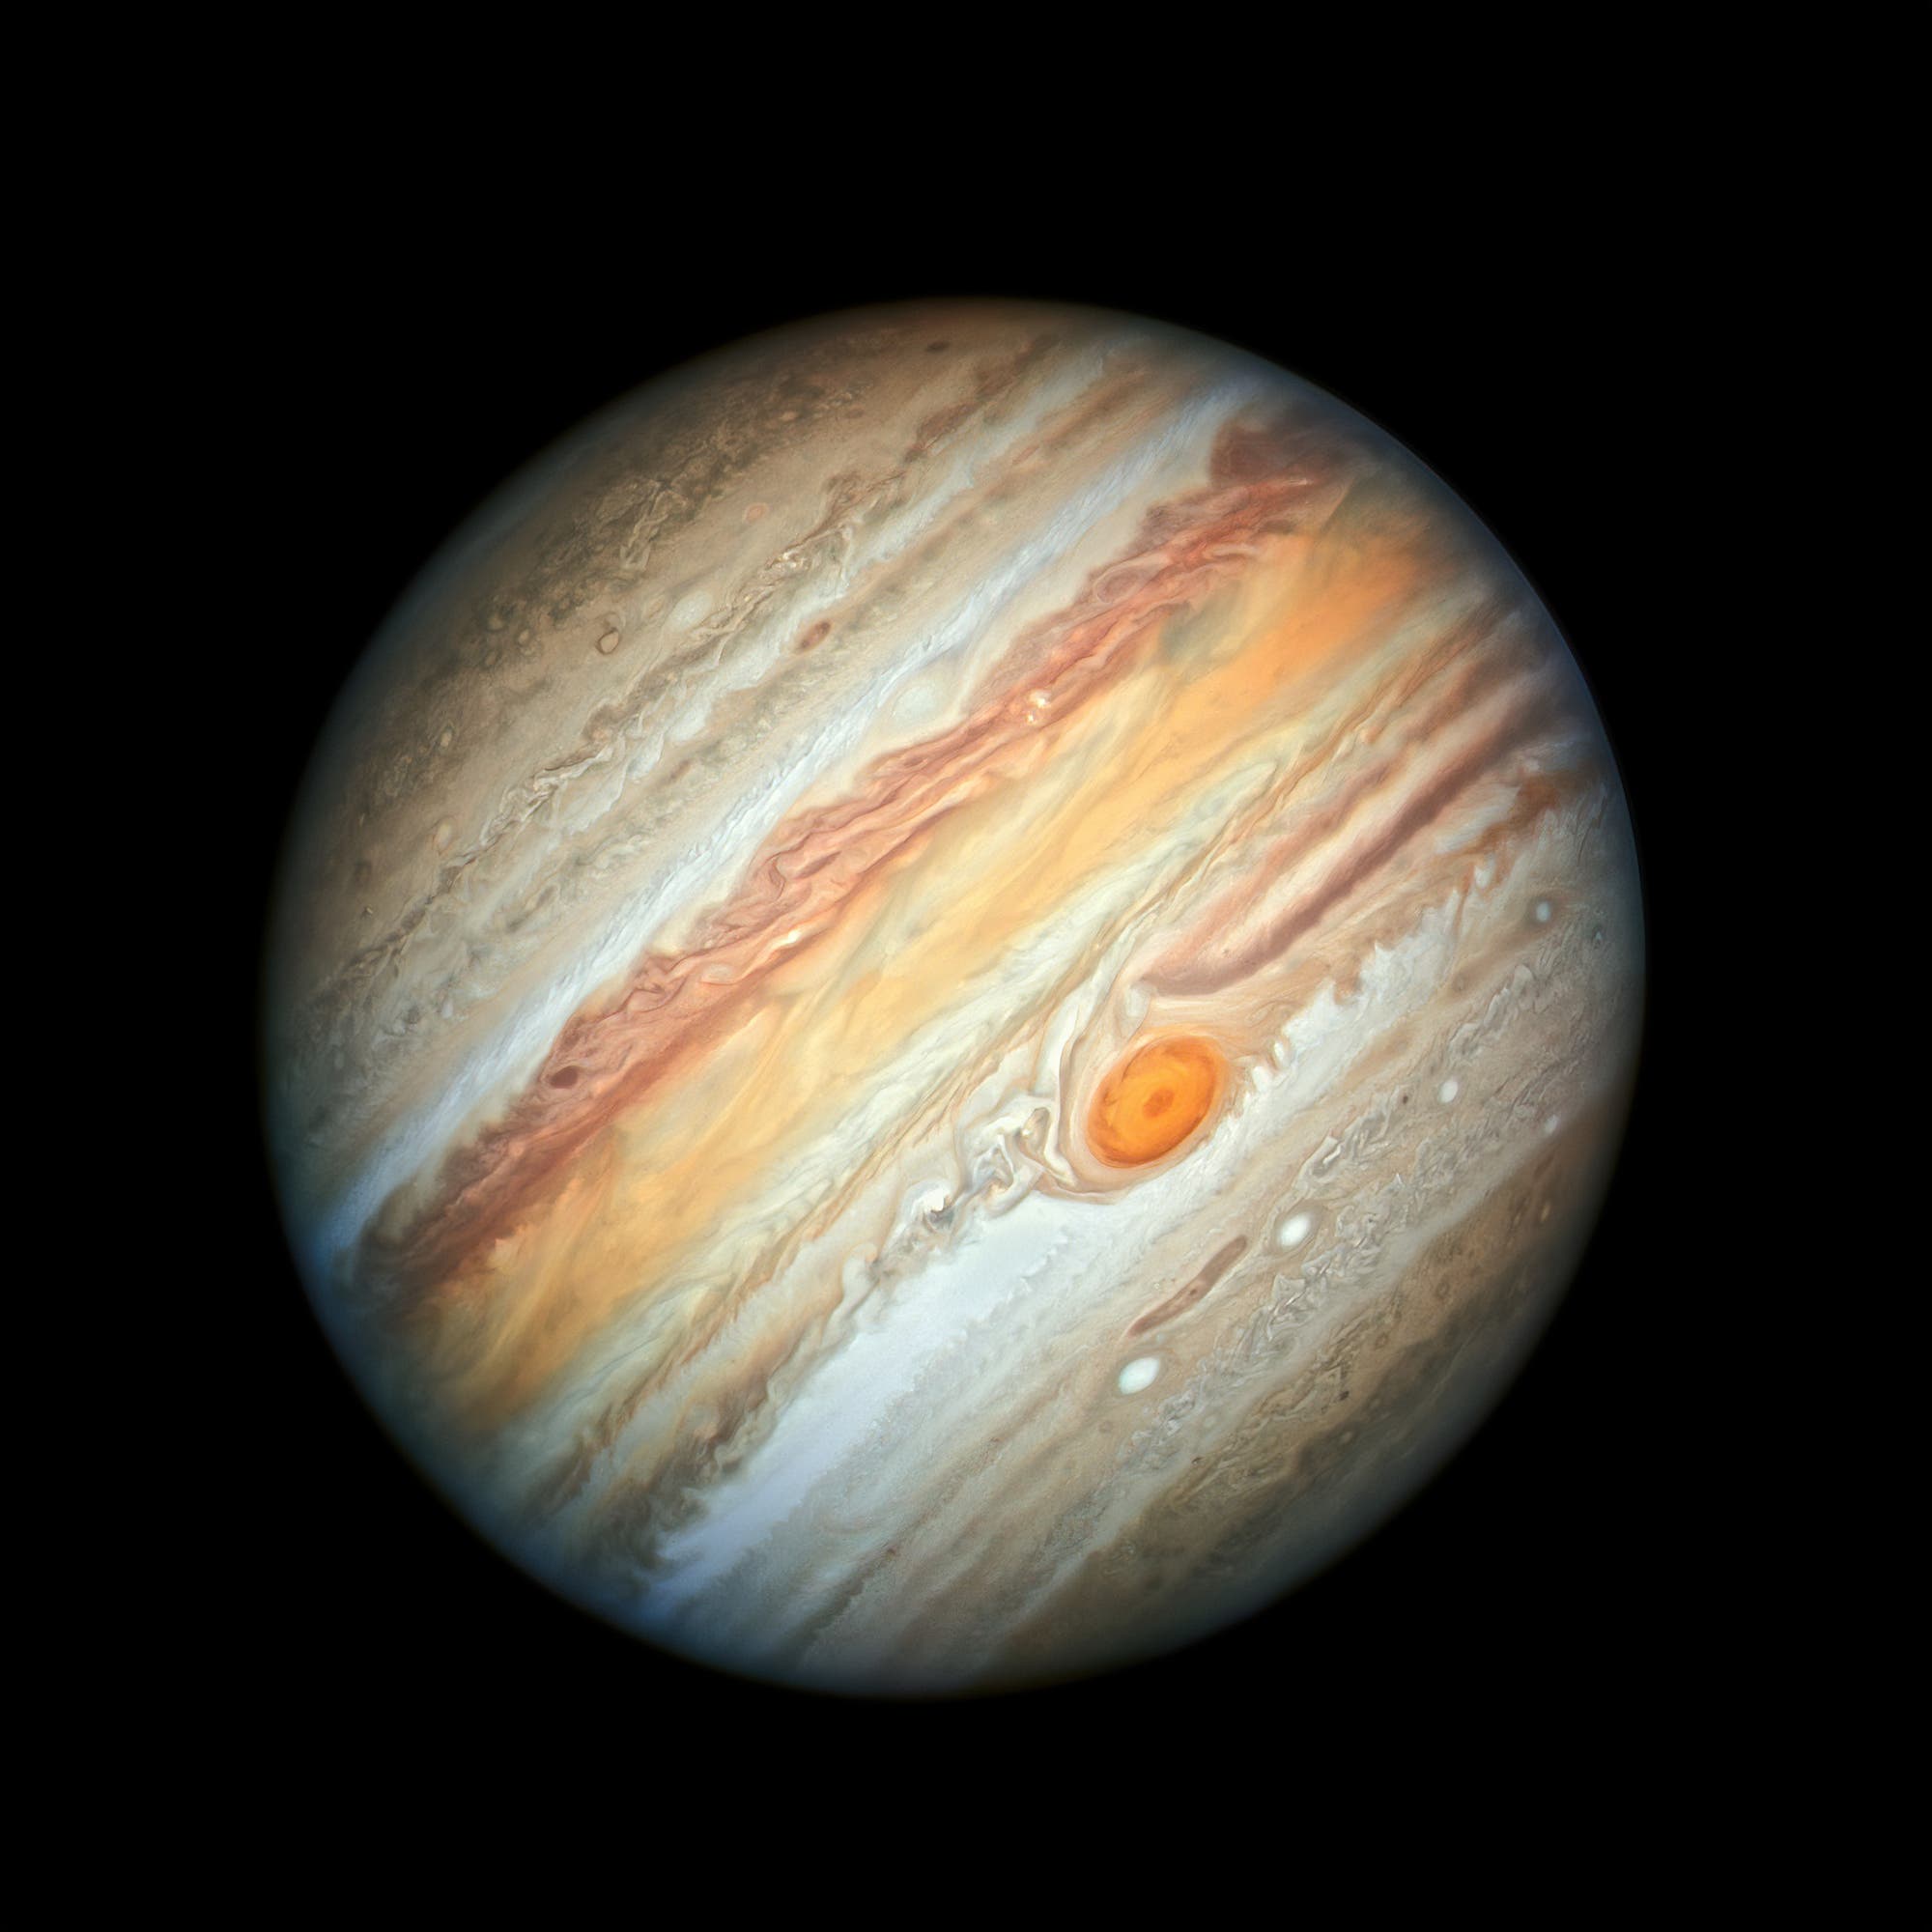 Dynamischer Jupiter – Aufnahme des Weltraumteleskops Hubble